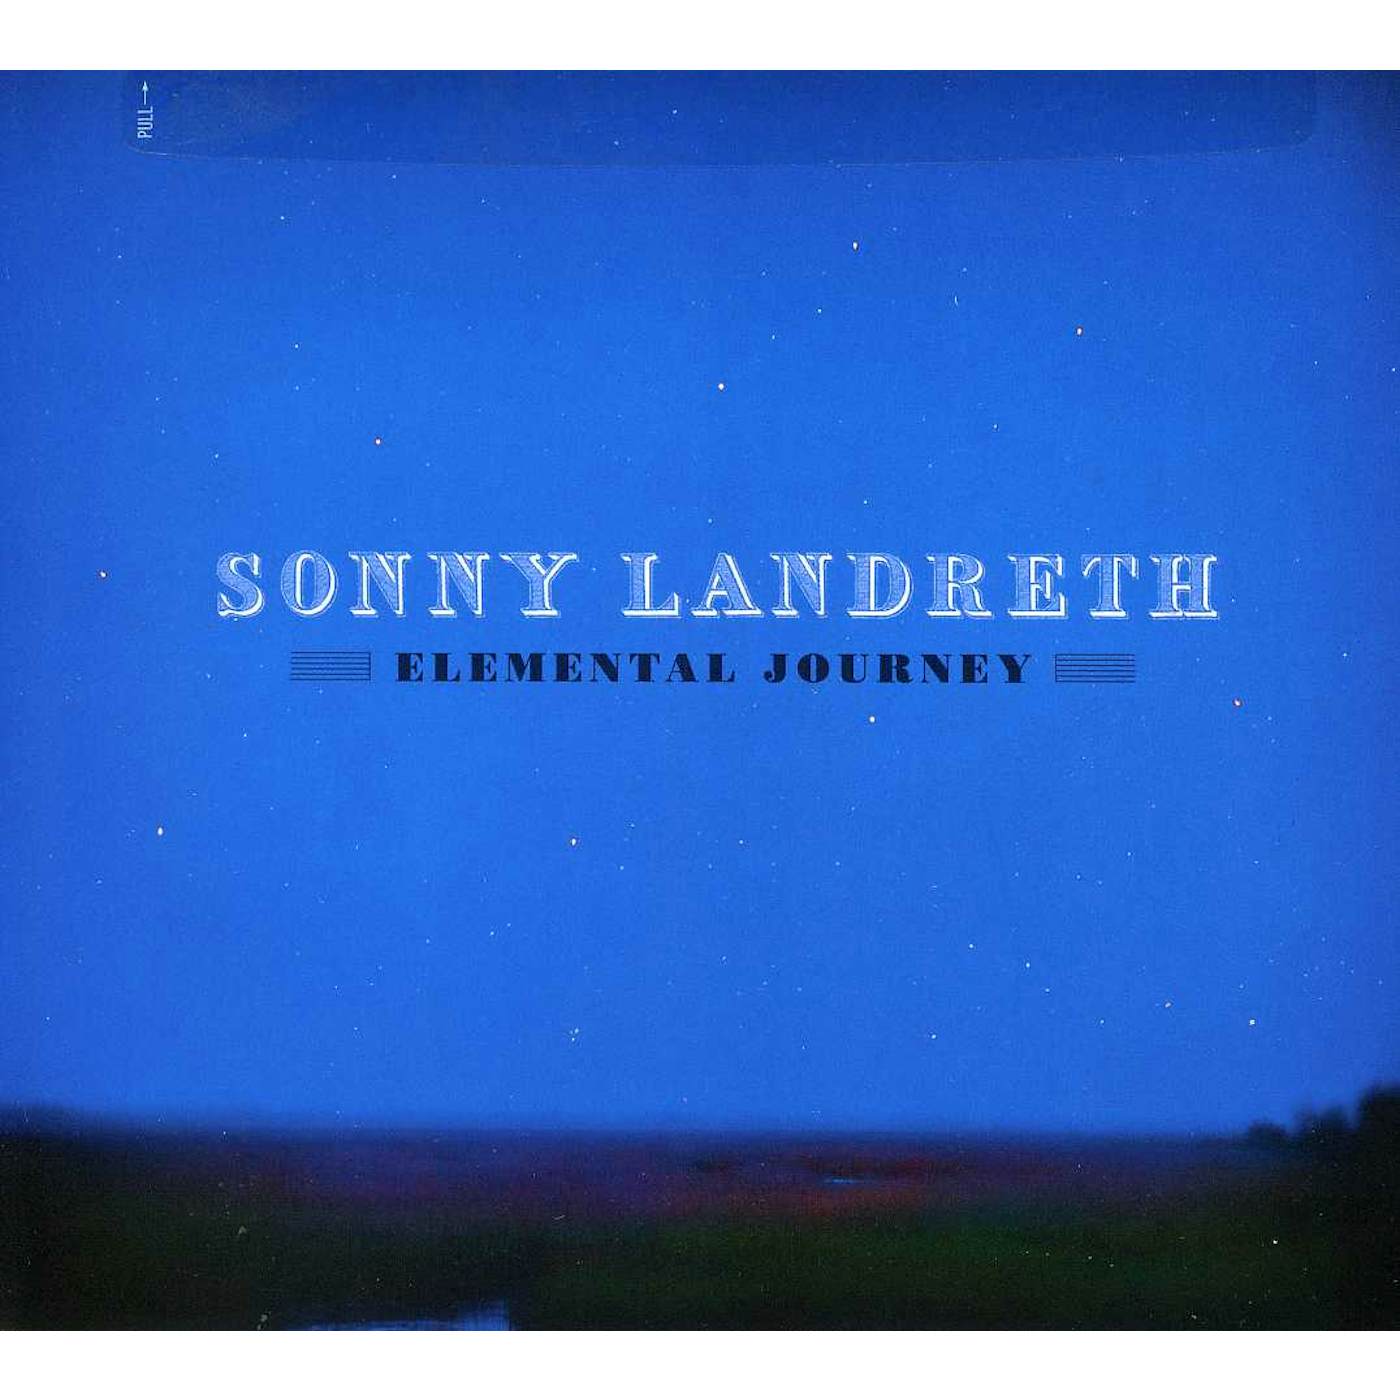 Sonny Landreth ELEMENTAL JOURNEY CD